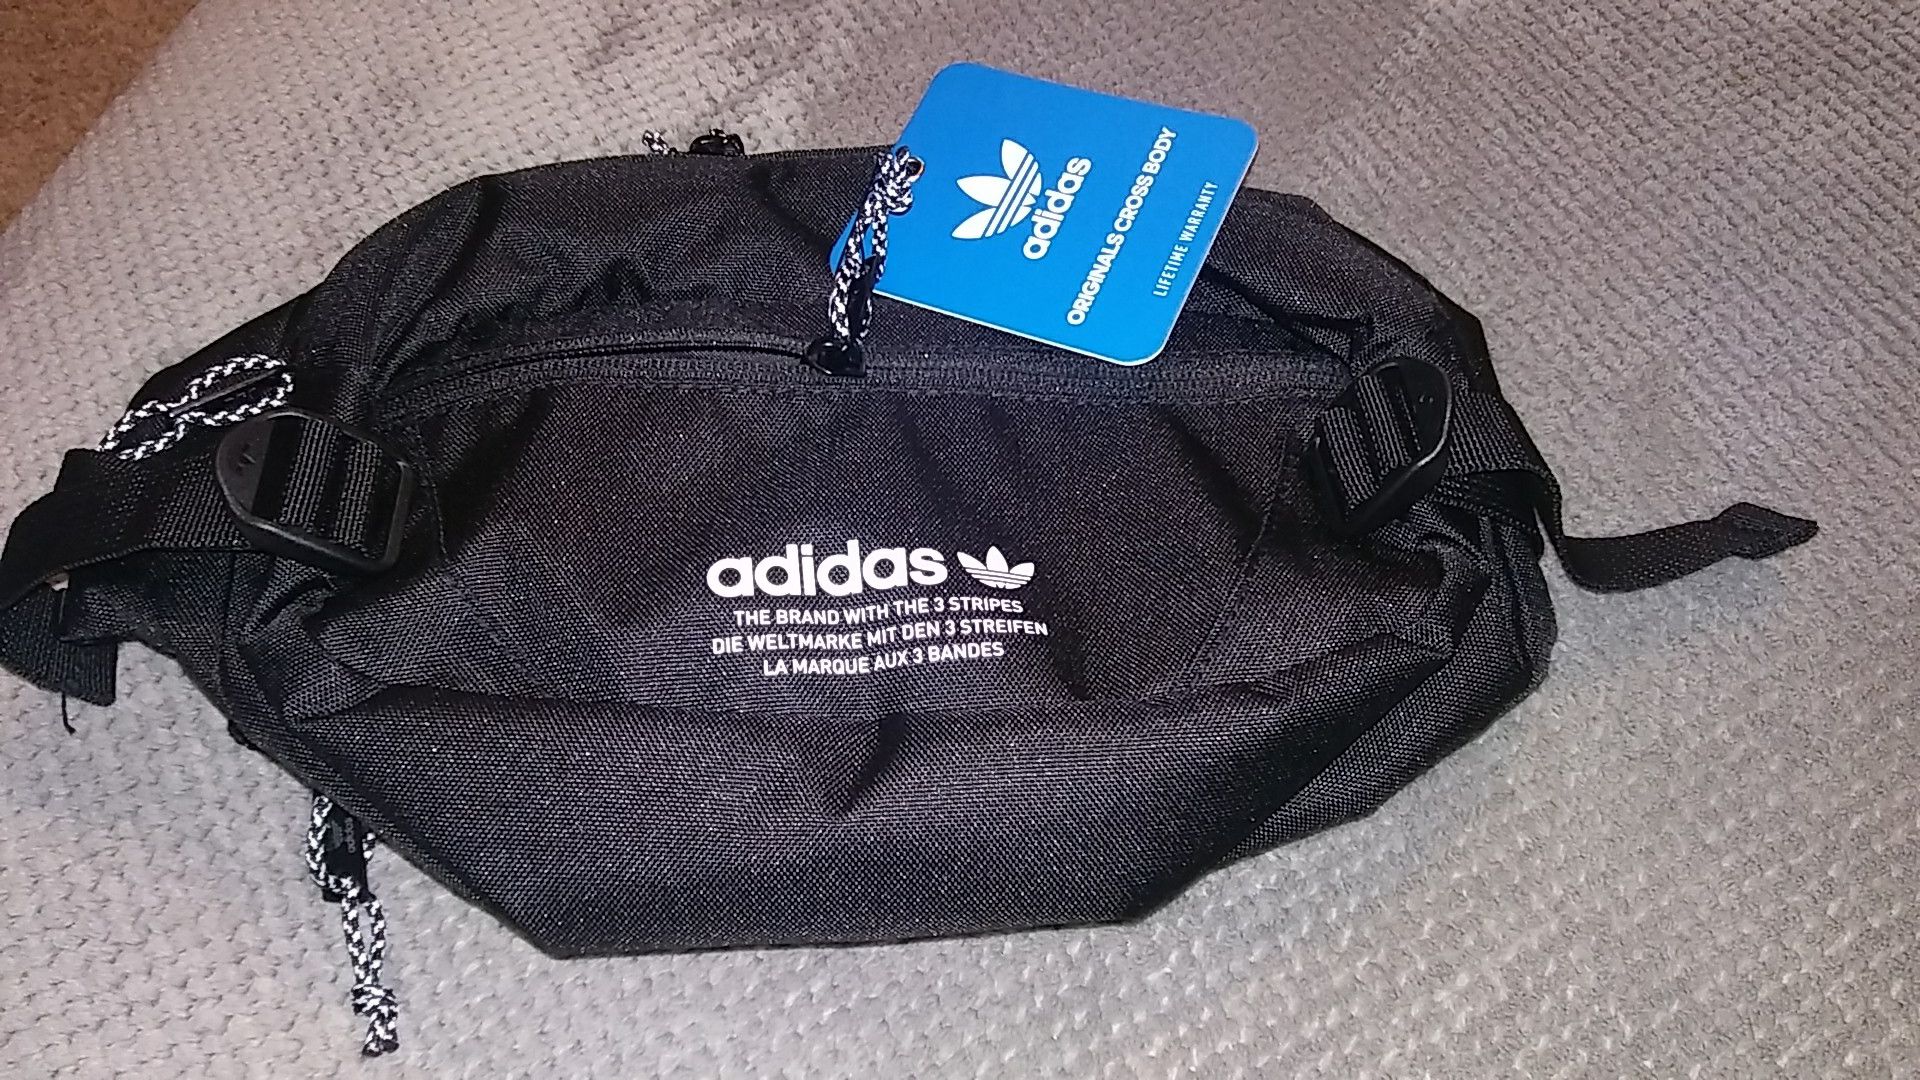 Adidas original waist bag!